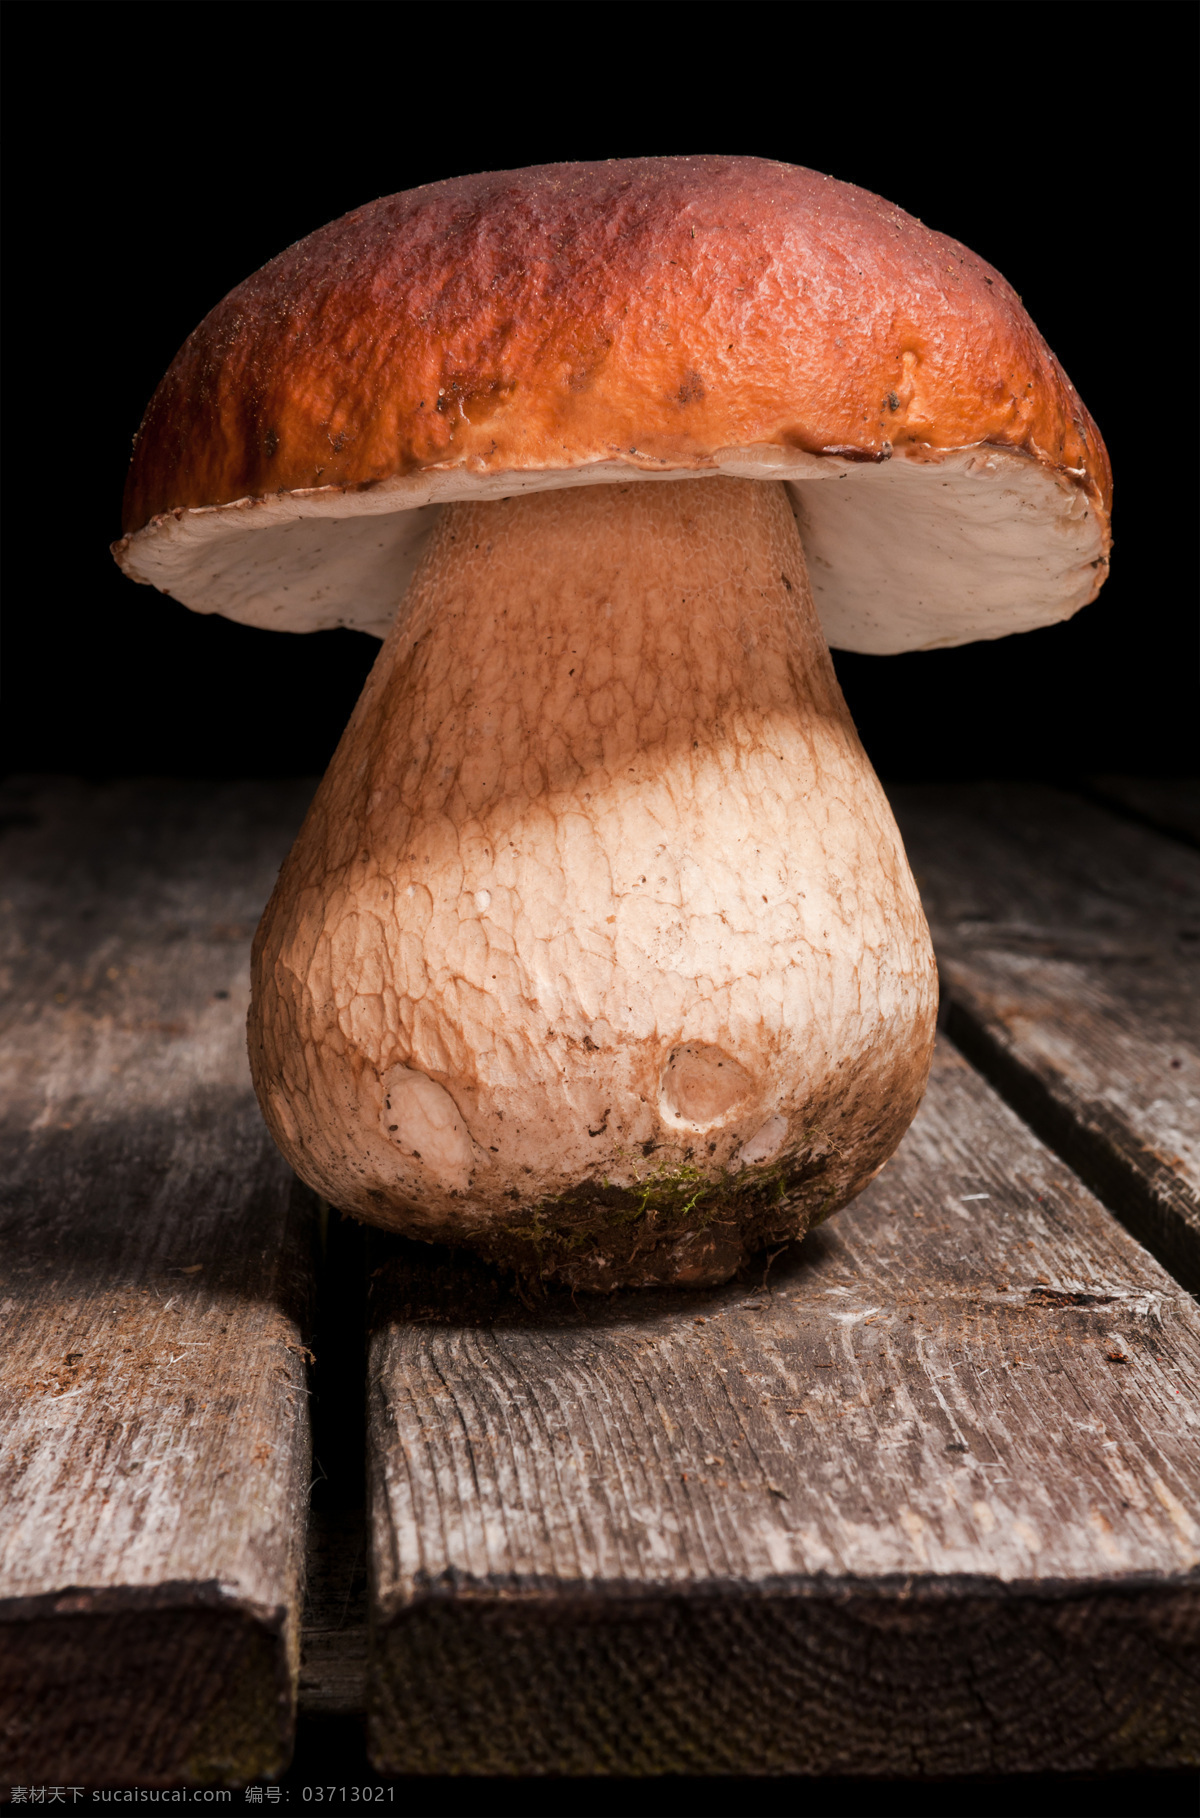 木板上的蘑菇 蘑菇 菌类植物 菌类生物 蘑菇摄影 其他类别 生活百科 黑色